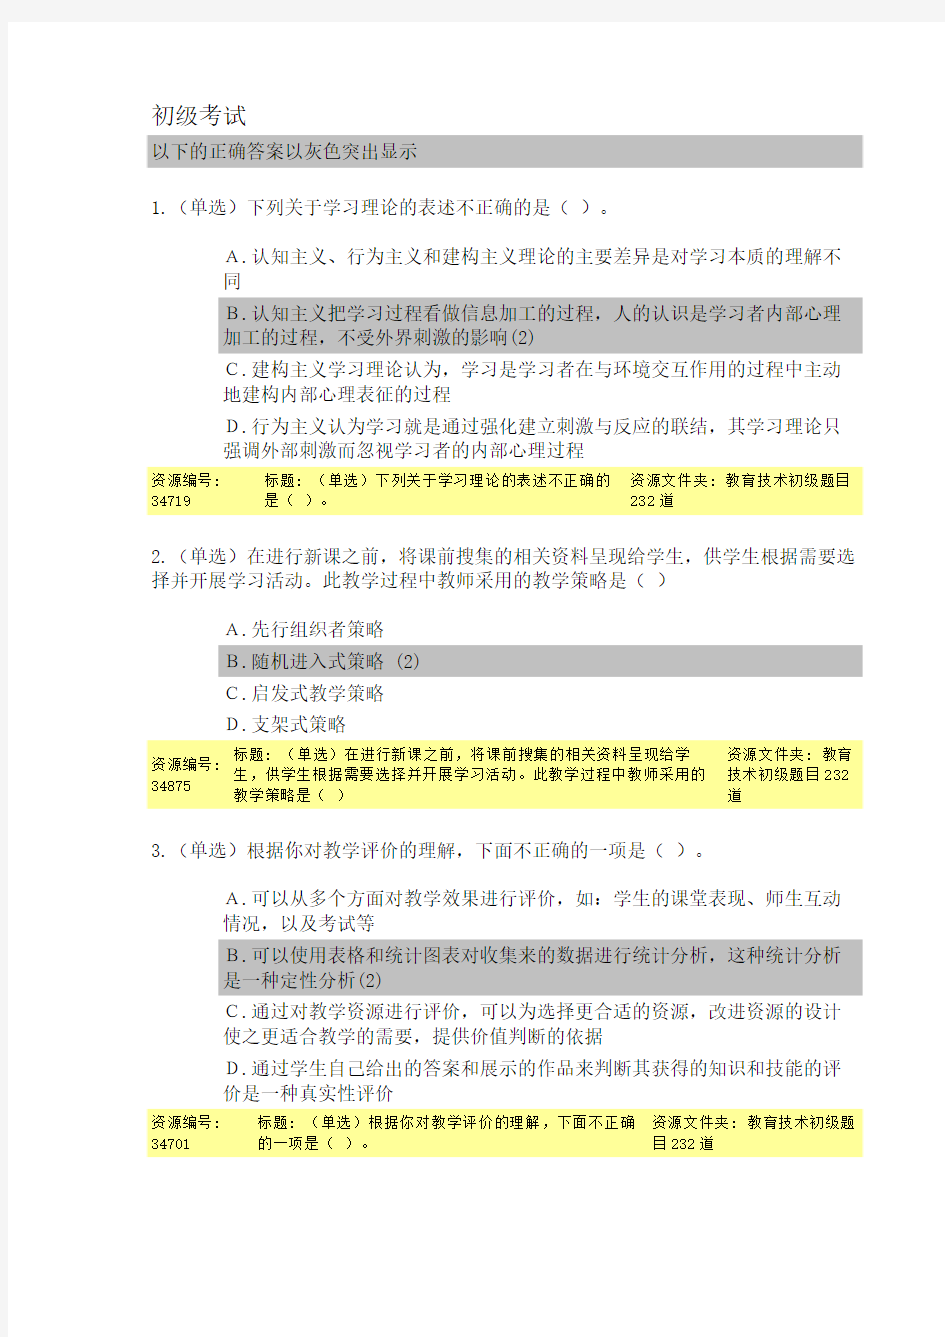 2014年云南省中小学教师教育技术能力培训网上初级 考试答案